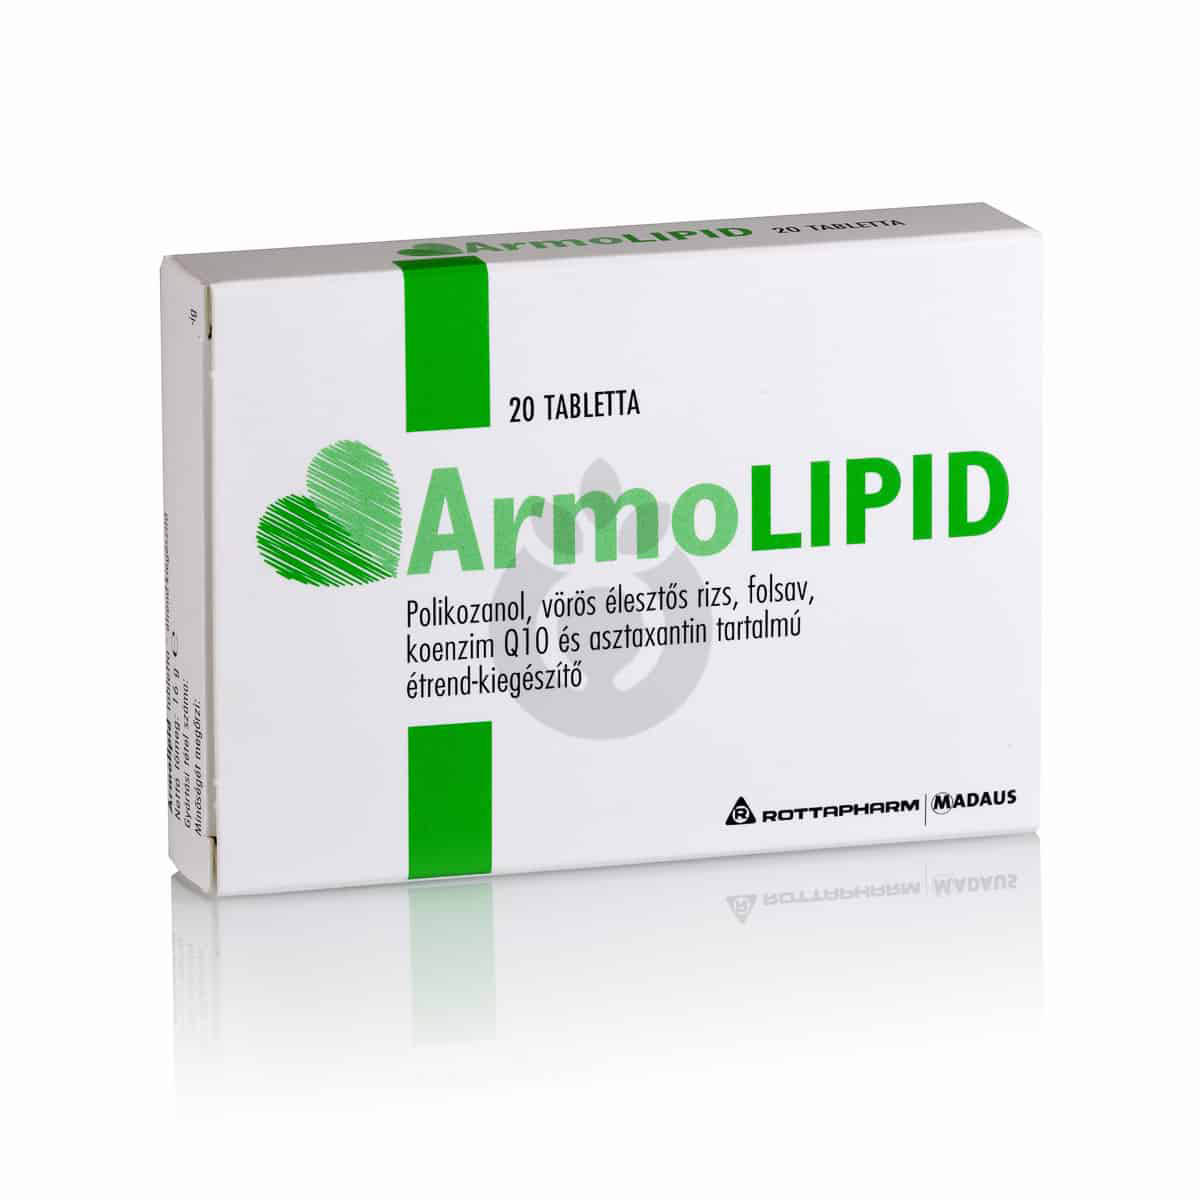 armolipid tabletta